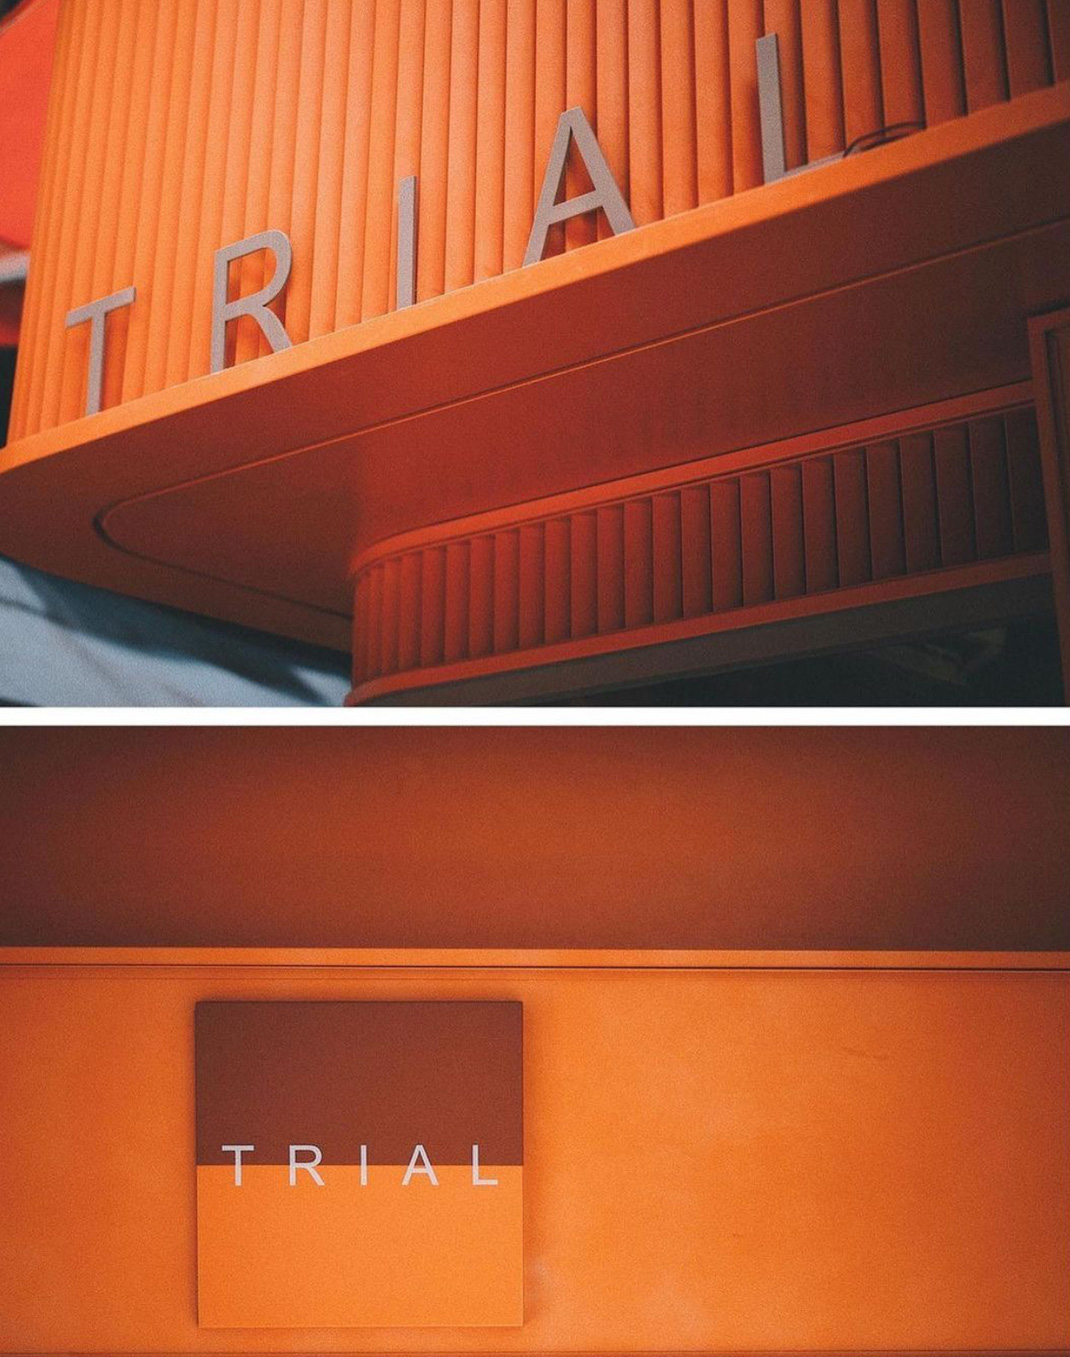 咖啡店TRIAL 香港 咖啡店 橙色 街铺 logo设计 vi设计 空间设计